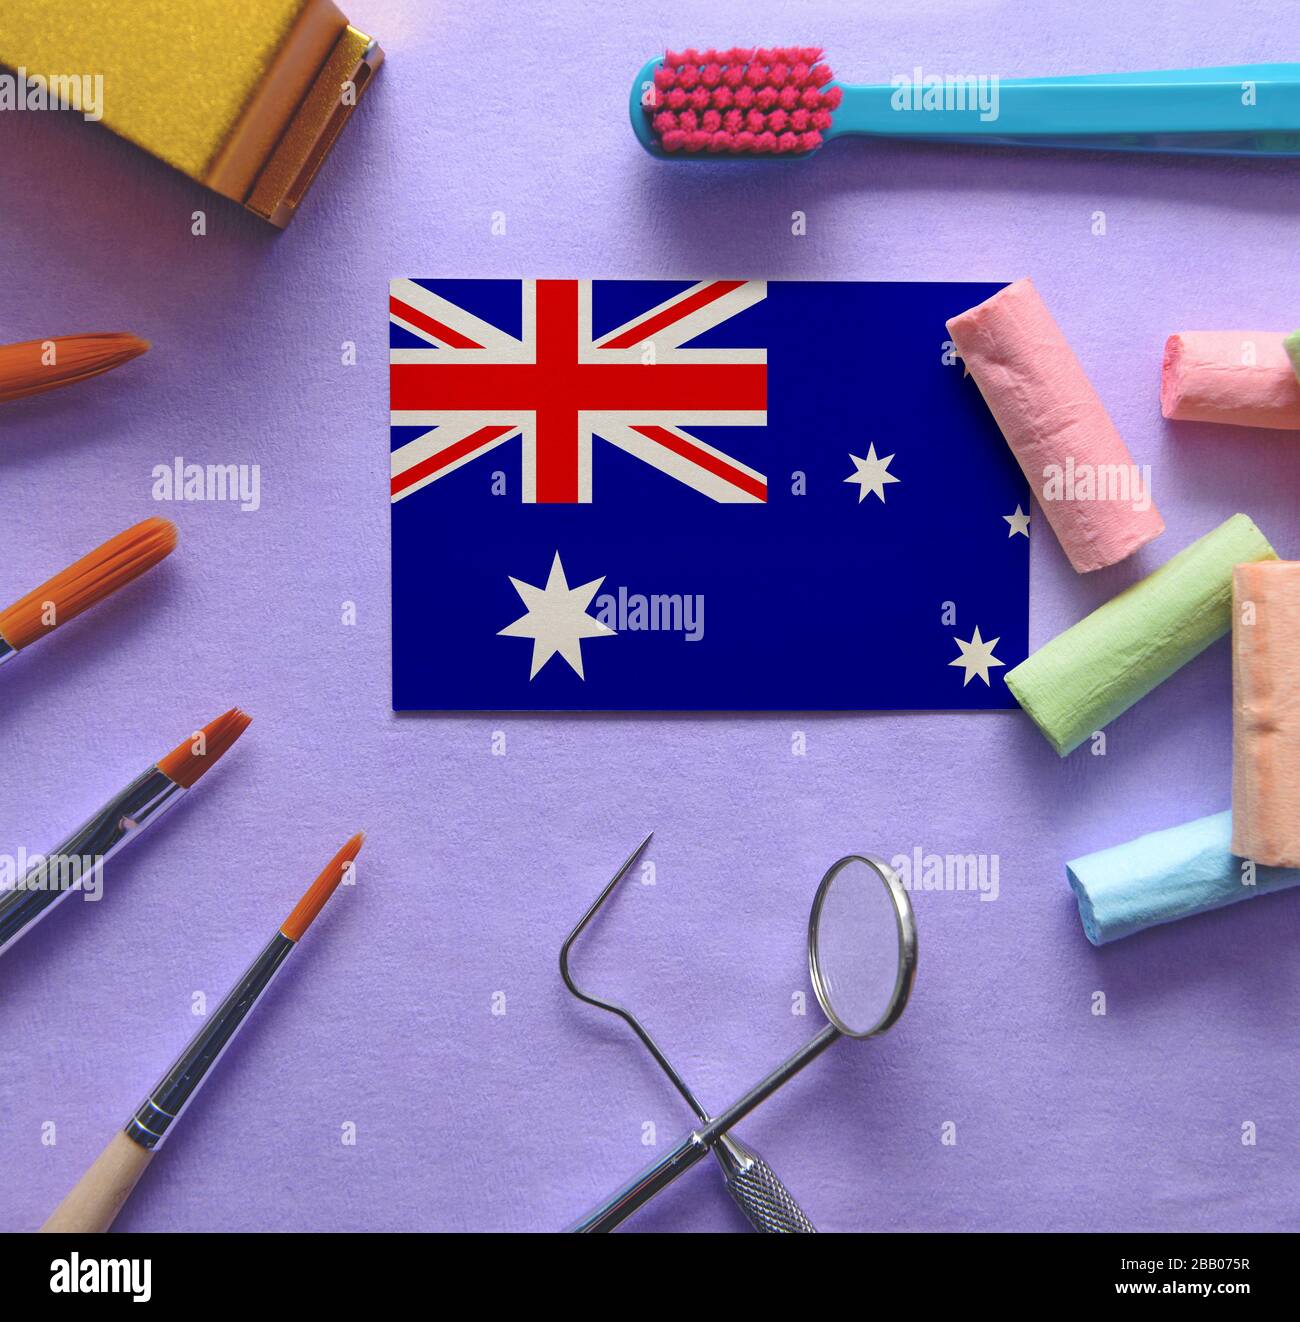 Zahnarztkonzept mit Instrumenten - konzeptionelles Bild des zahnmedizinischen Gesundheitssystems Australiens Stockfoto